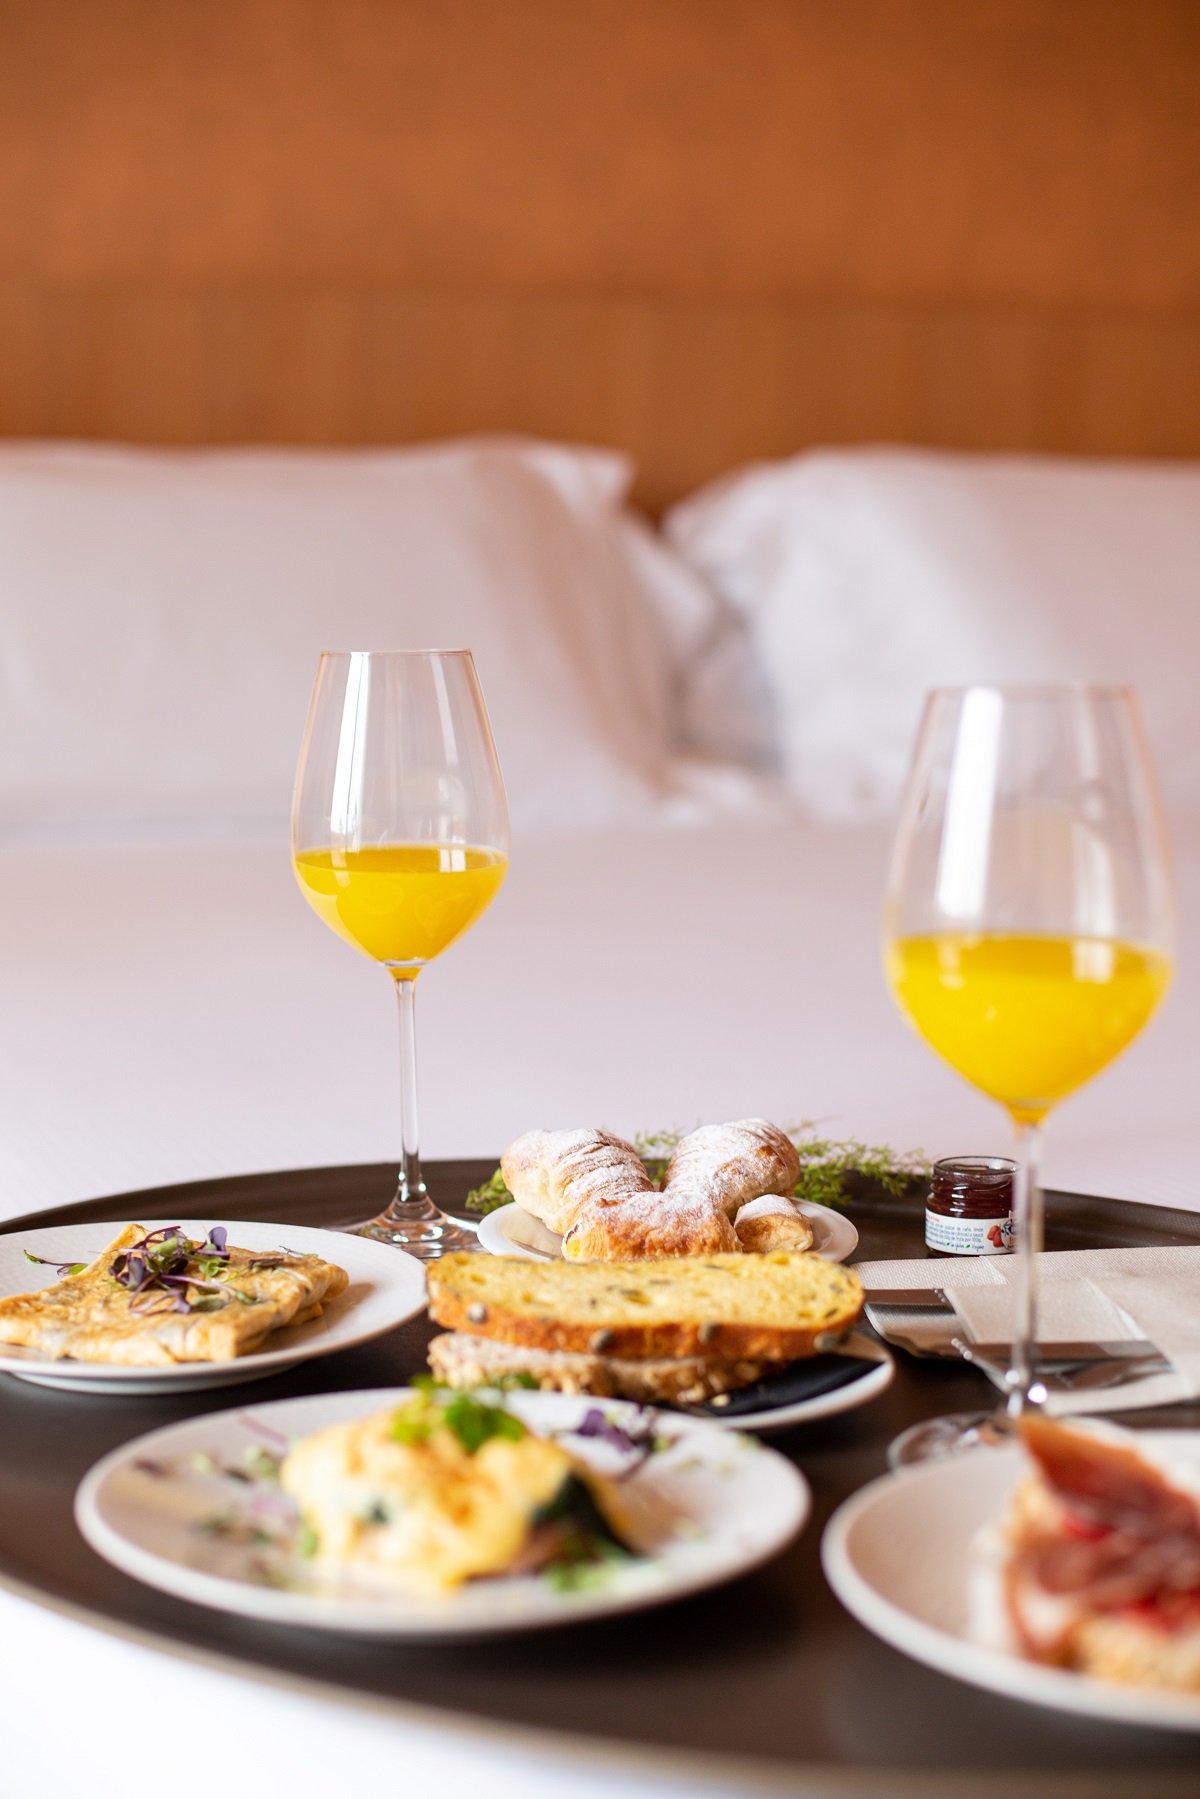 Hotel breakfast in bed